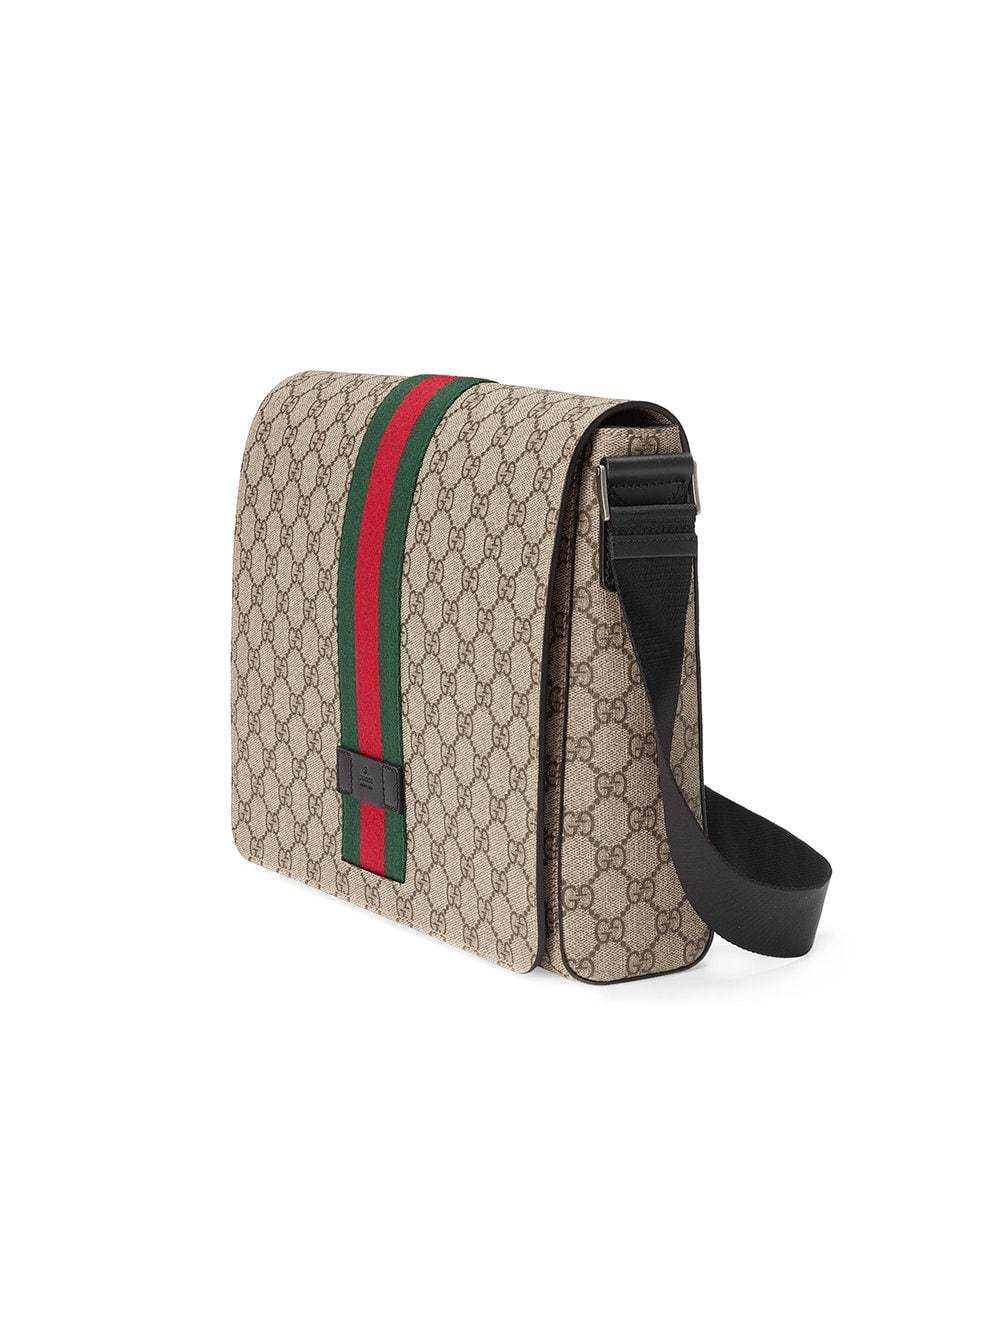 Gucci GG Supreme Messenger Bag - Farfetch